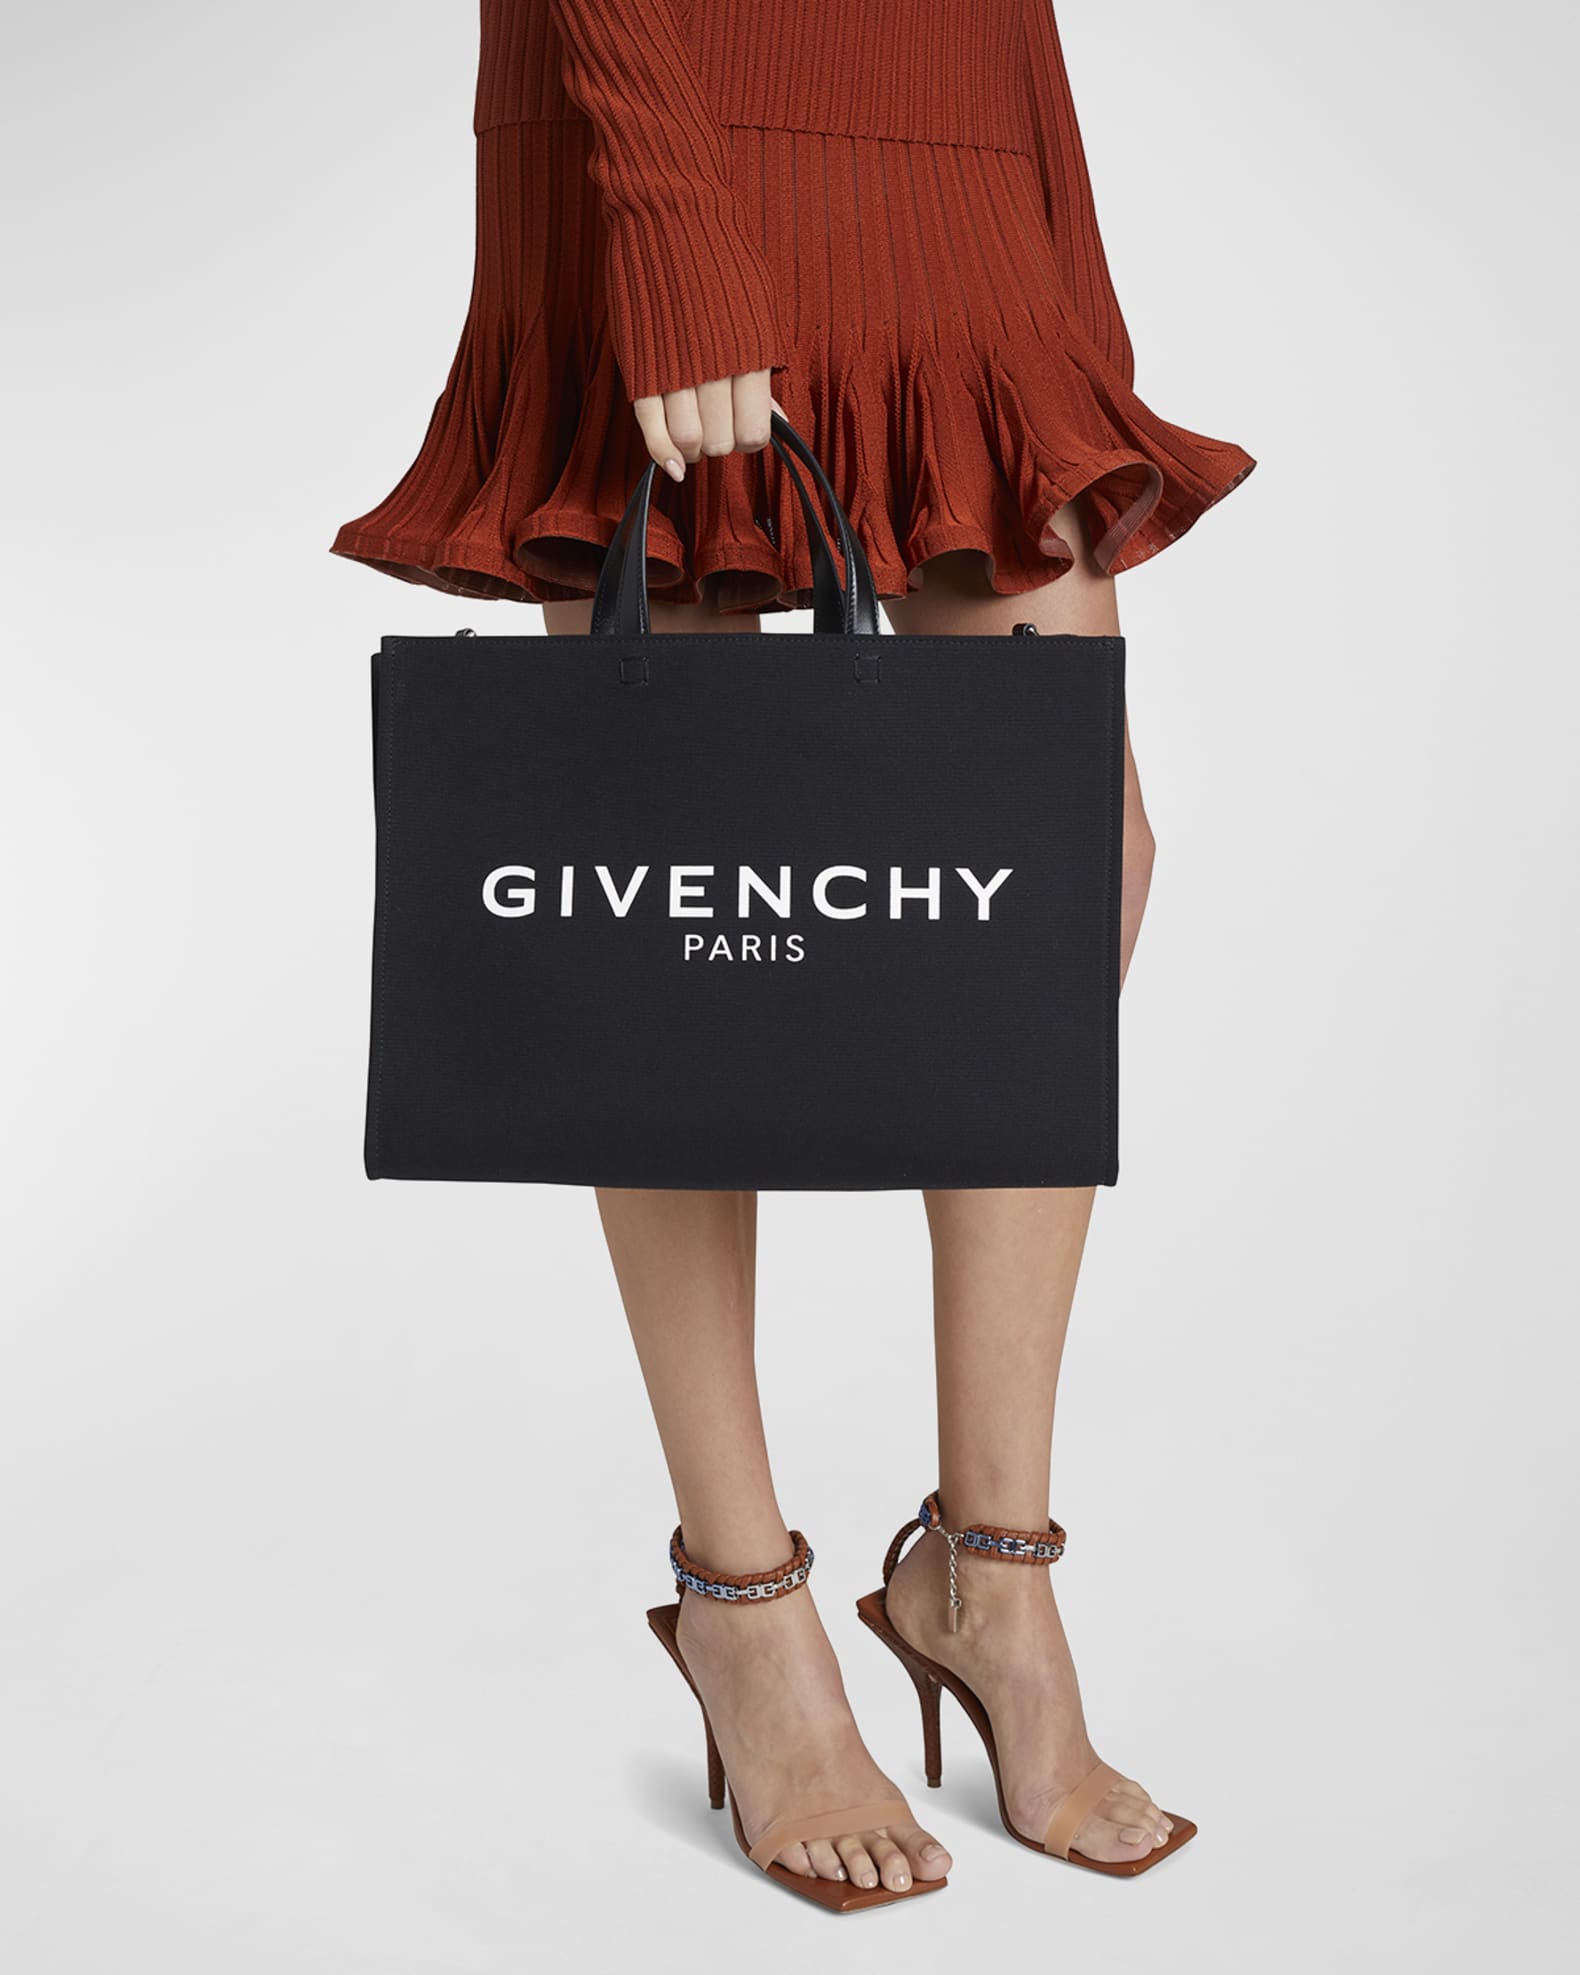 Givenchy Medium G Tote Lace Macrame Shopping Bag